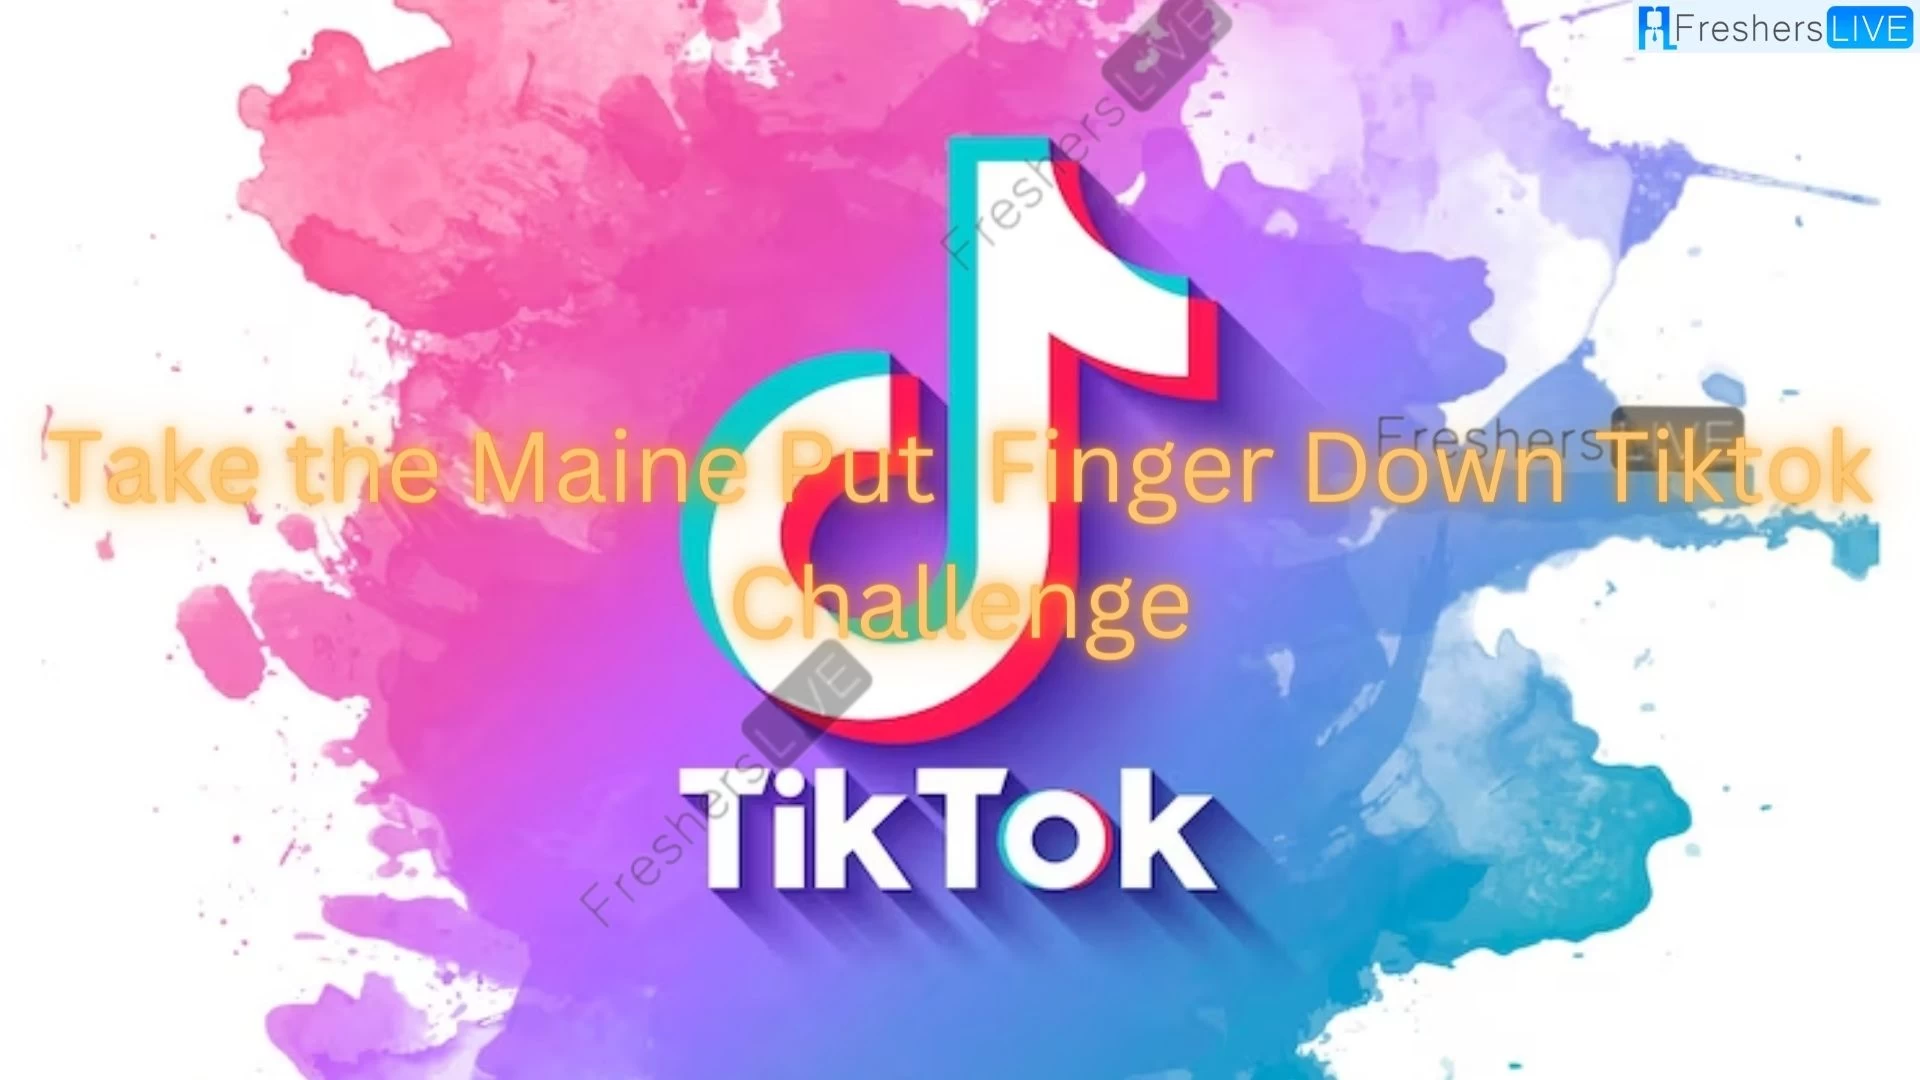 Acepta el desafío Tiktok de Maine y pon tu dedo bajo Tiktok